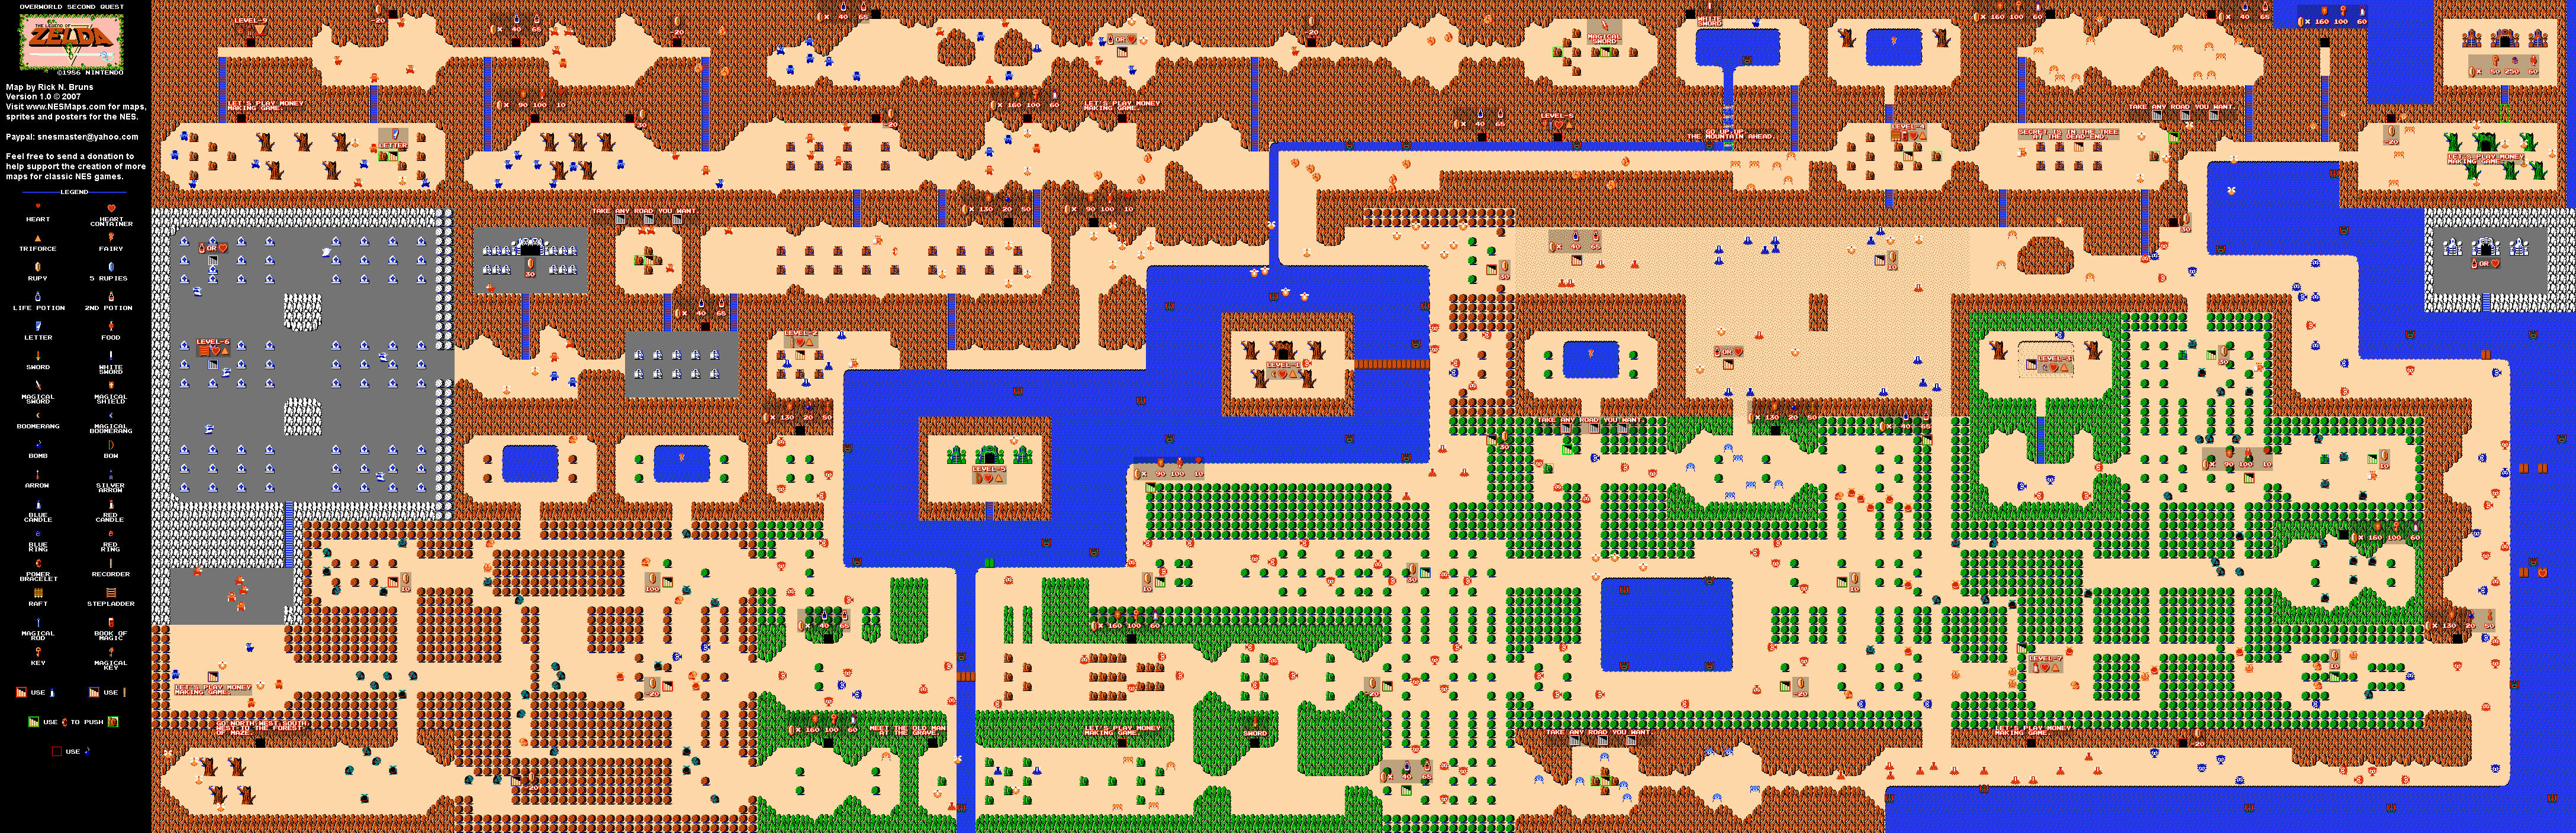 The Legend of Zelda - Overworld Quest 2 - NES Map